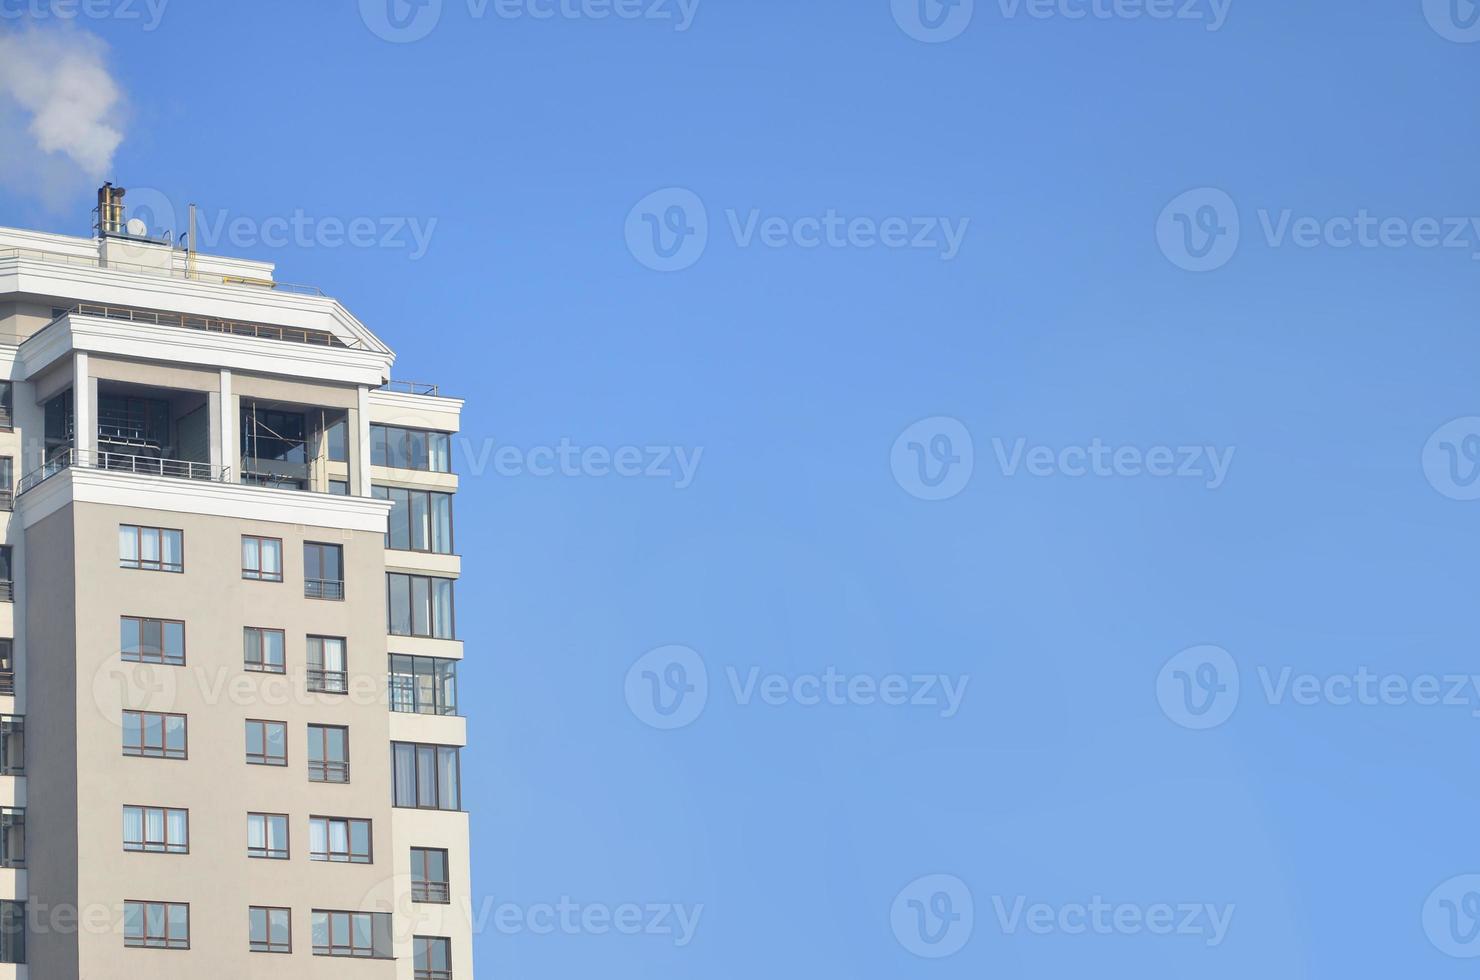 prédio de escritórios de vários andares com céu azul foto